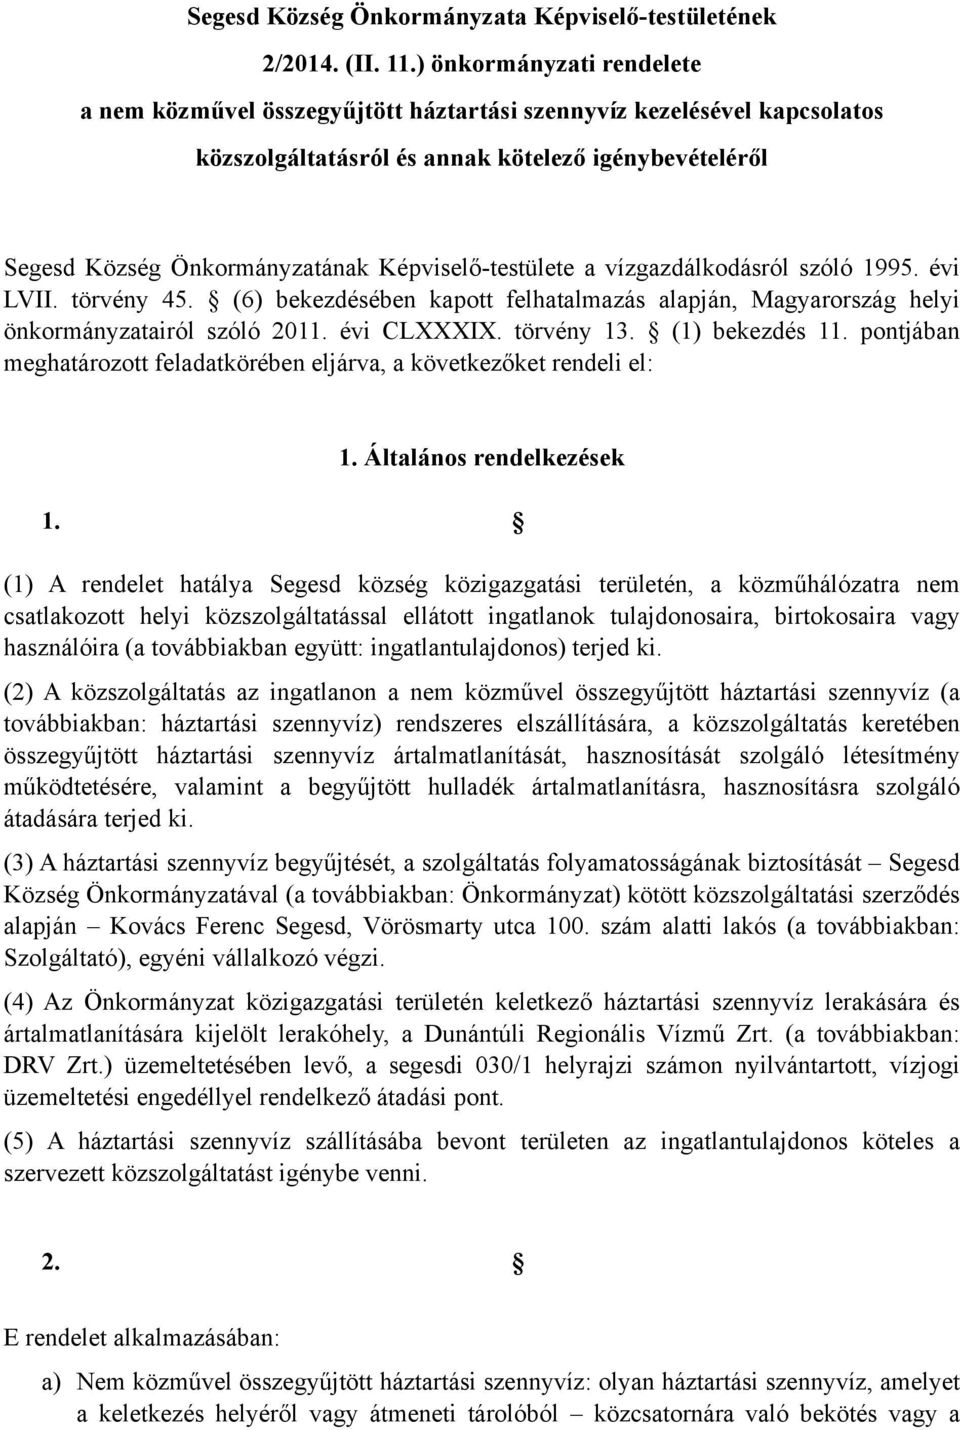 Képviselő-testülete a vízgazdálkodásról szóló 1995. évi LVII. törvény 45. (6) bekezdésében kapott felhatalmazás alapján, Magyarország helyi önkormányzatairól szóló 2011. évi CLXXXIX. törvény 13.